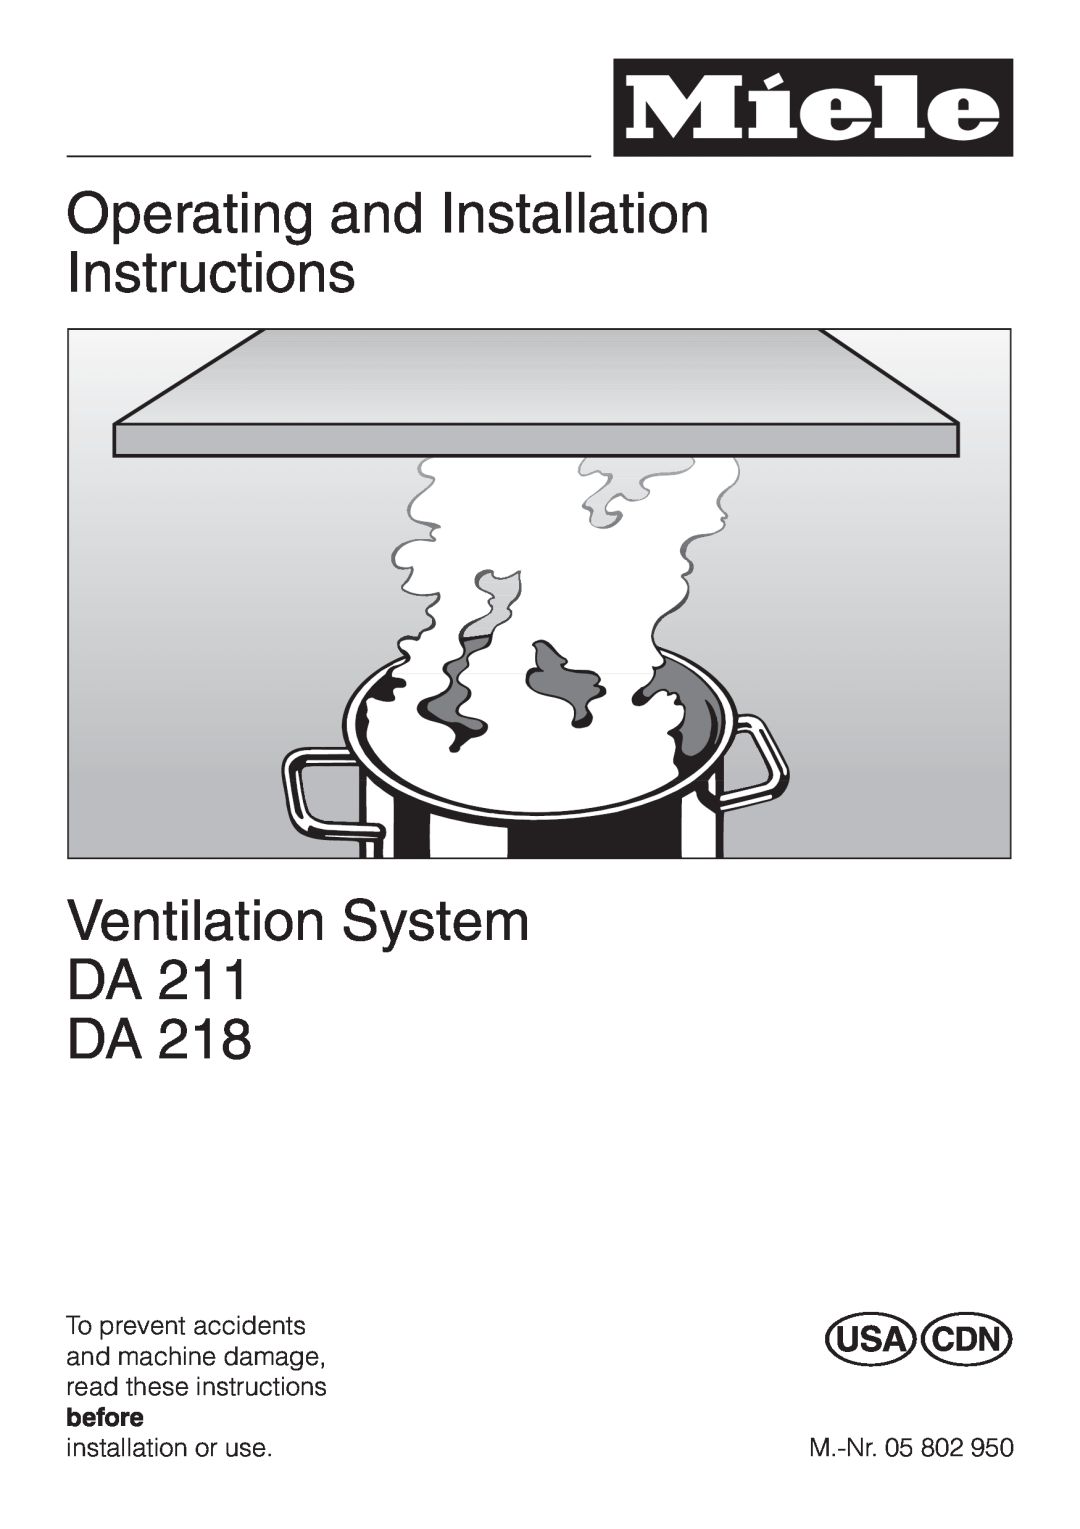 Miele DA211, DA218 installation instructions Operating and Installation Instructions, Ventilation System DA DA 